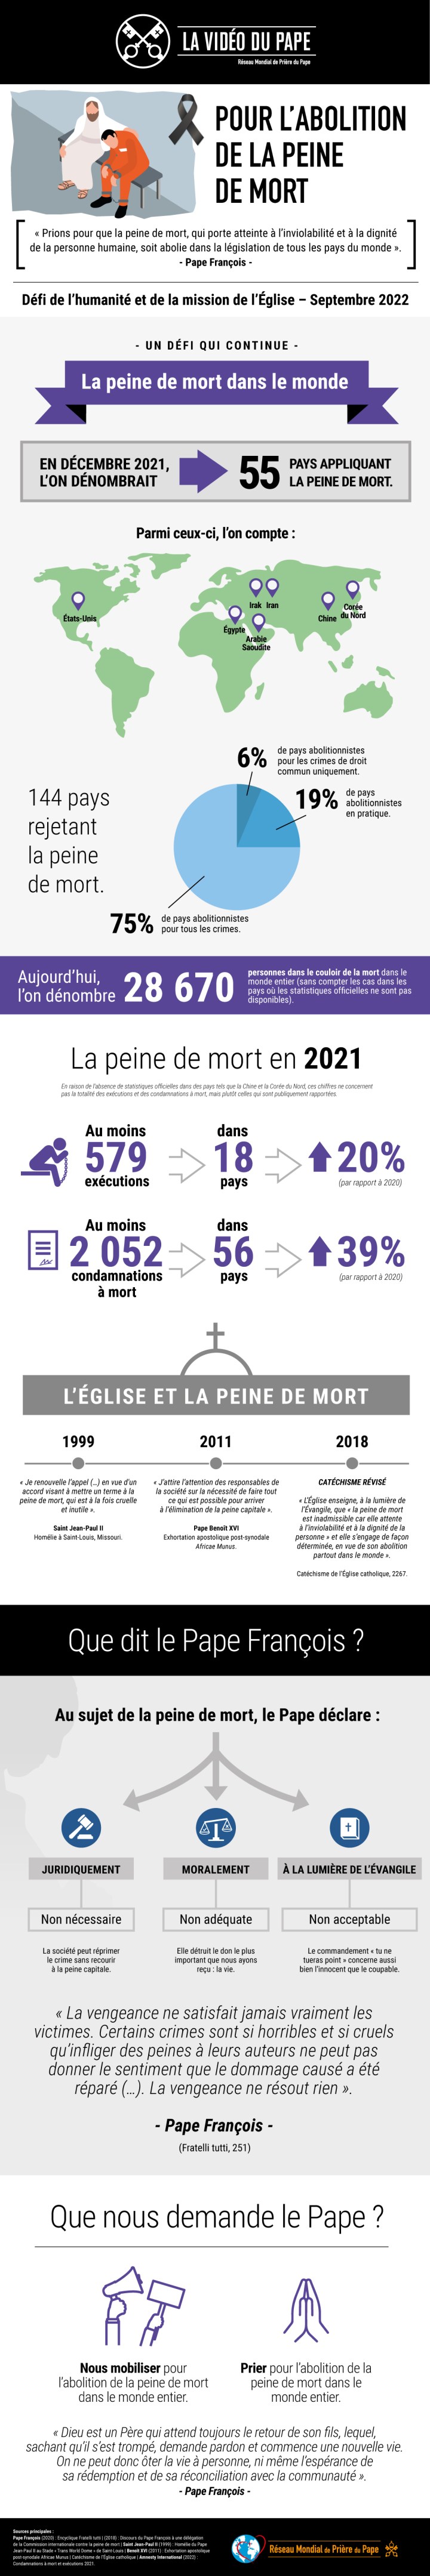 Infographic-TPV-9-2022-FR-Pour-labolition-de-la-peine-de-mort-1.jpg